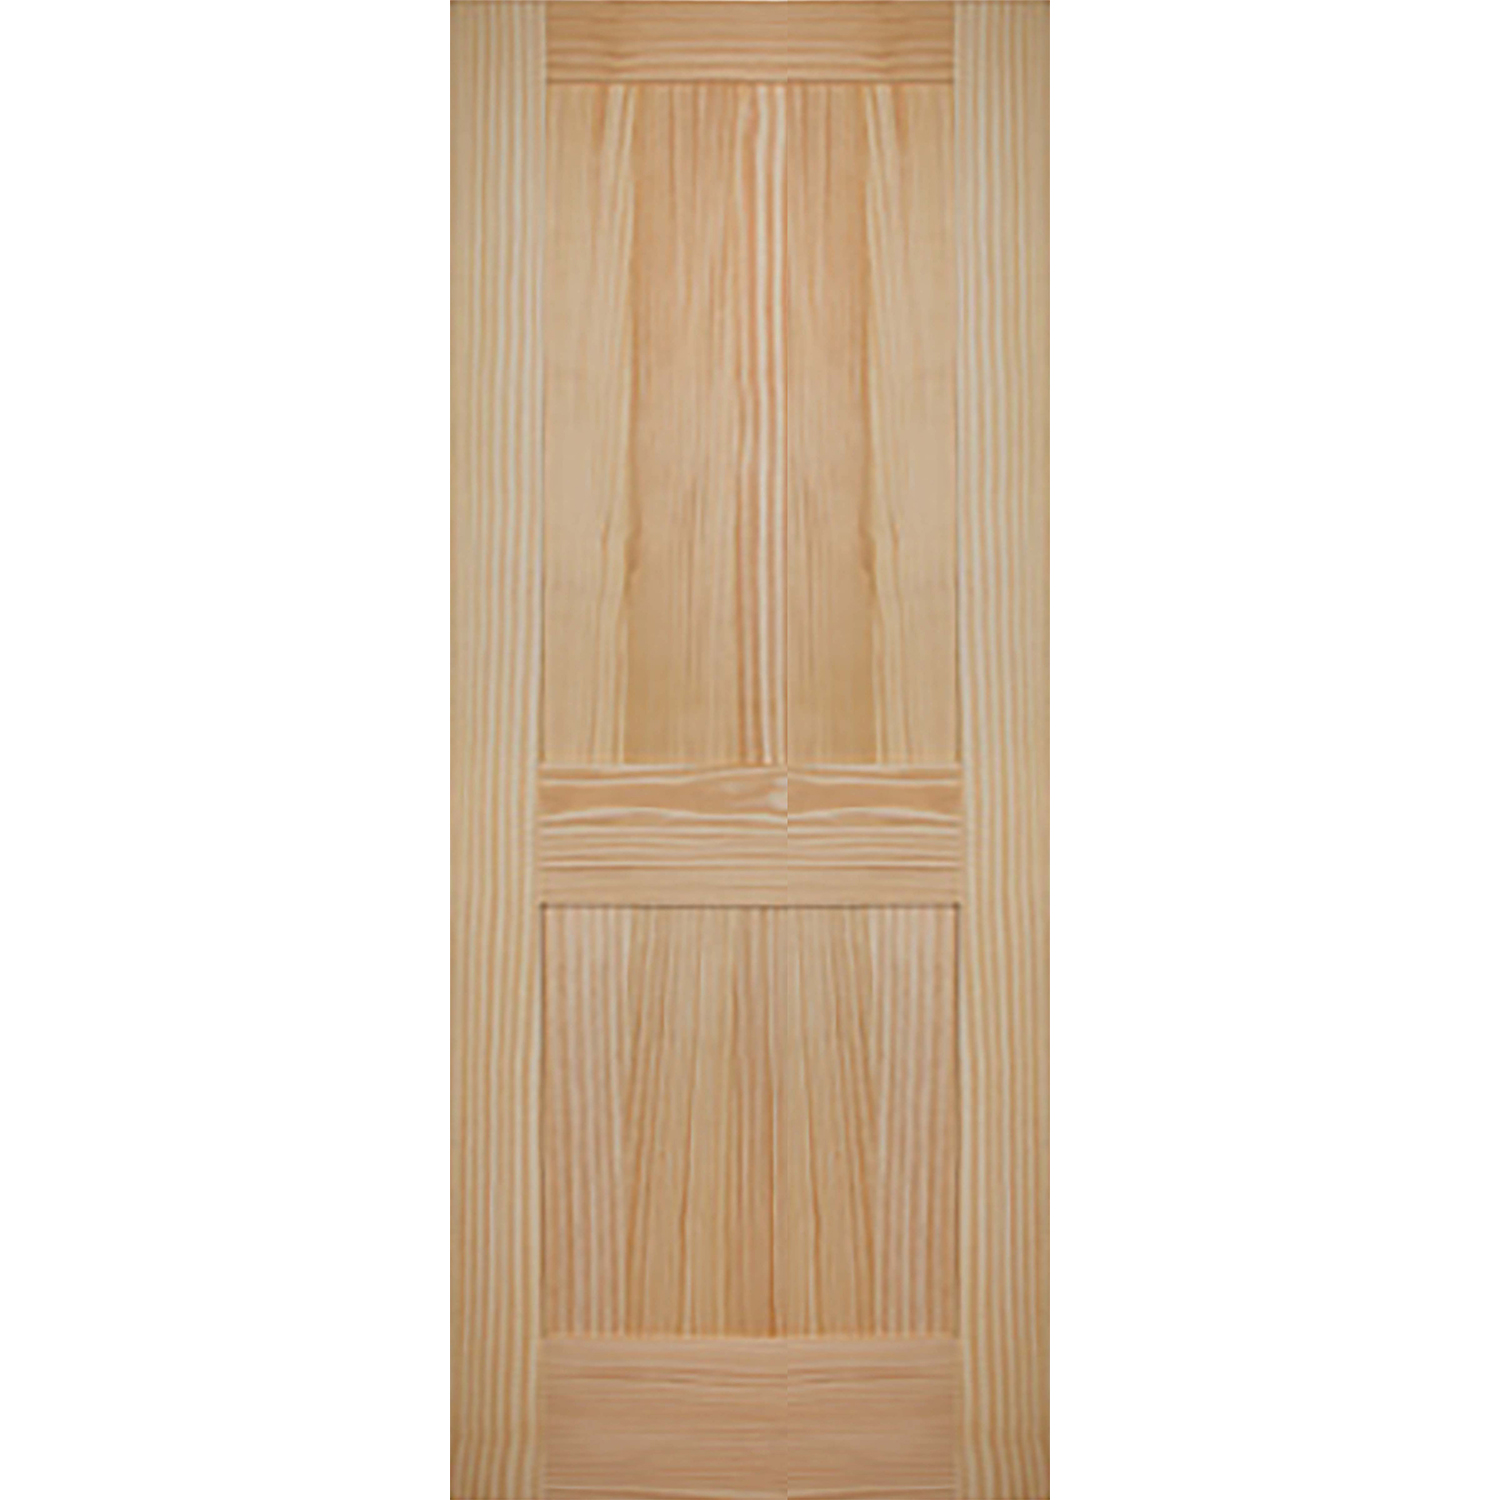 2 Panel 32 x 80 x 1 3/8 - Knotty Pine Door Shaker